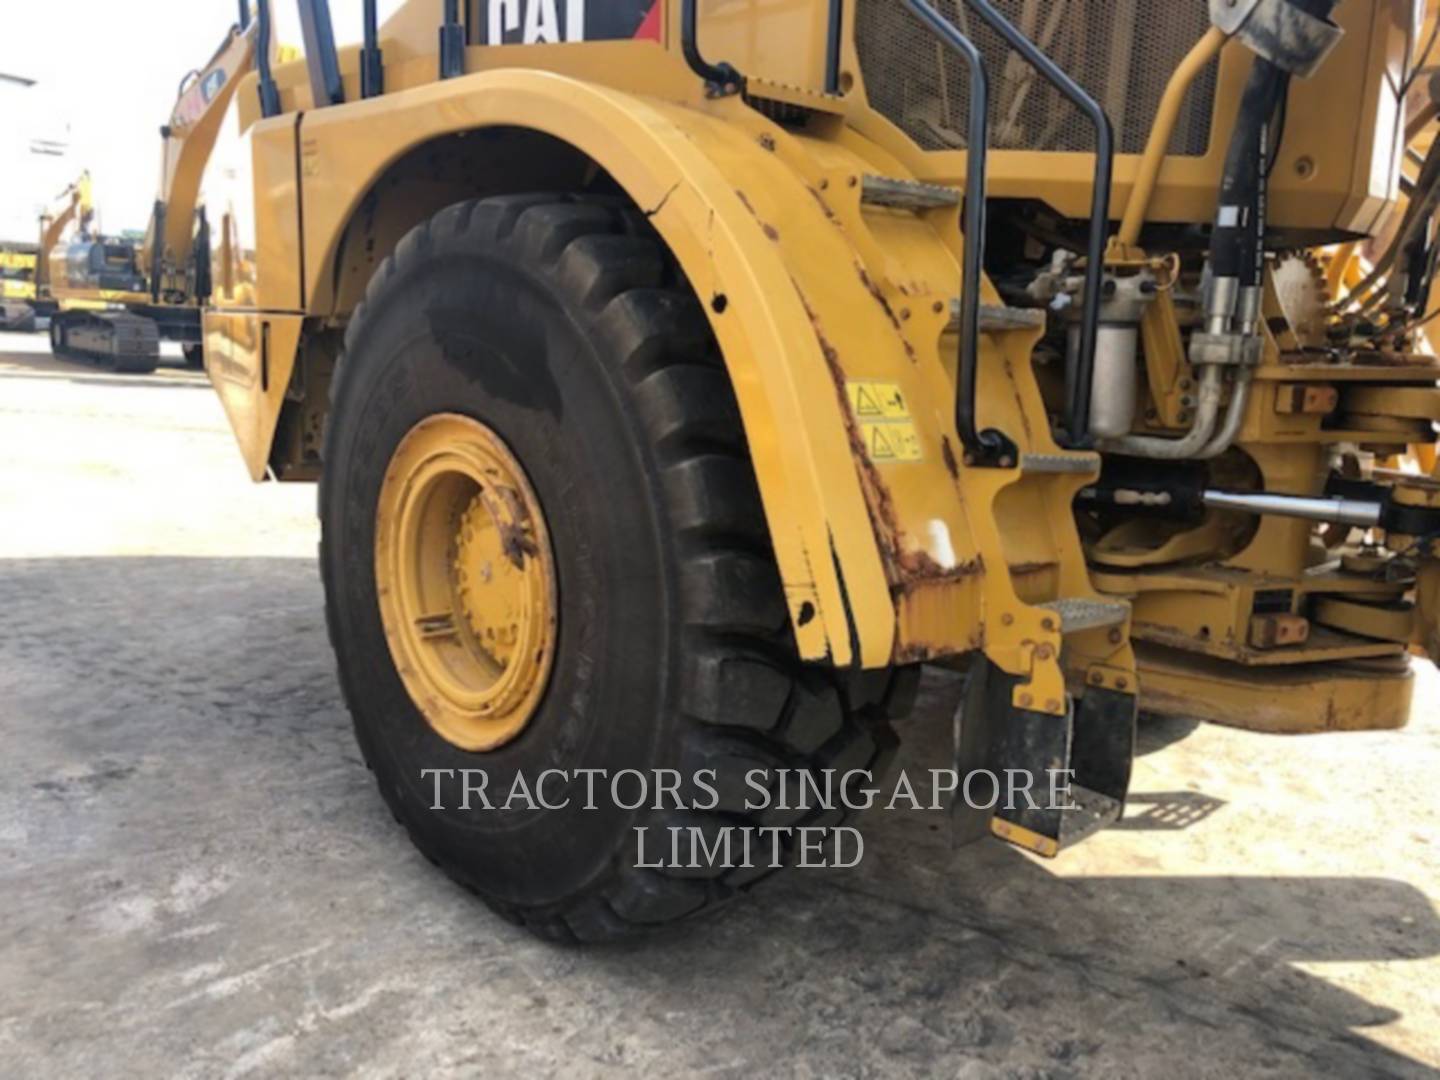 wtk?JHNyYz1kNmExNmU3NWQ3MWFhZDA5YTQ4ZThhYTE1ZGFmZGI1ZSYkdHh0PVRSQUNUT1JTJTIwU0lOR0FQT1JFJTIwTElNSVRFRCY1MjYyNQ== 745C | Tractors Singapore